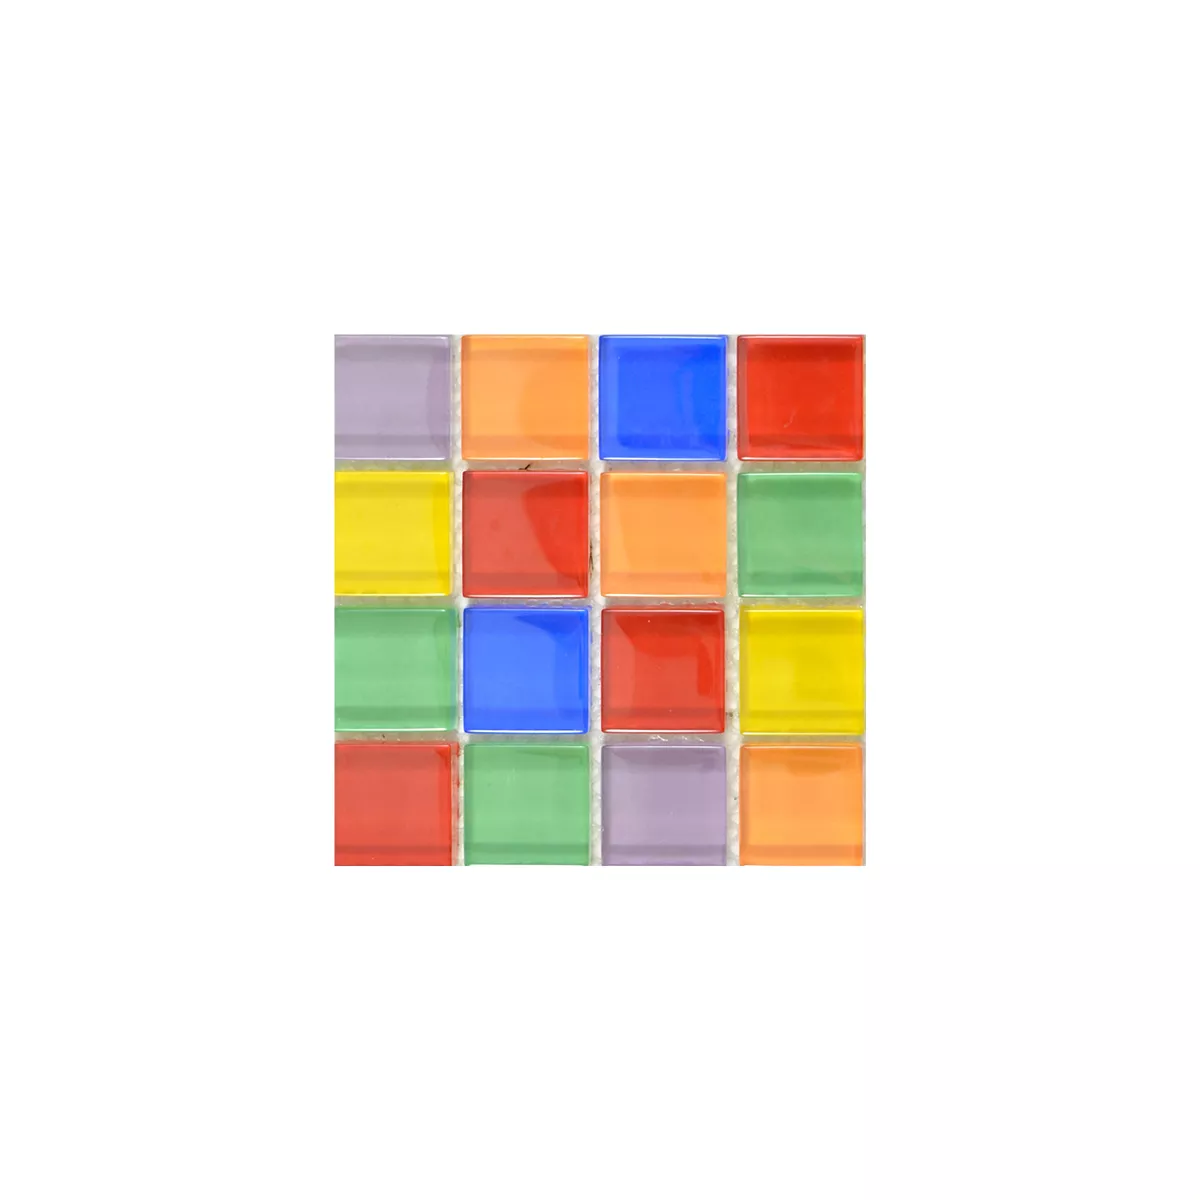 Sample Glass Mosaic Tiles Ararat Colored Mix